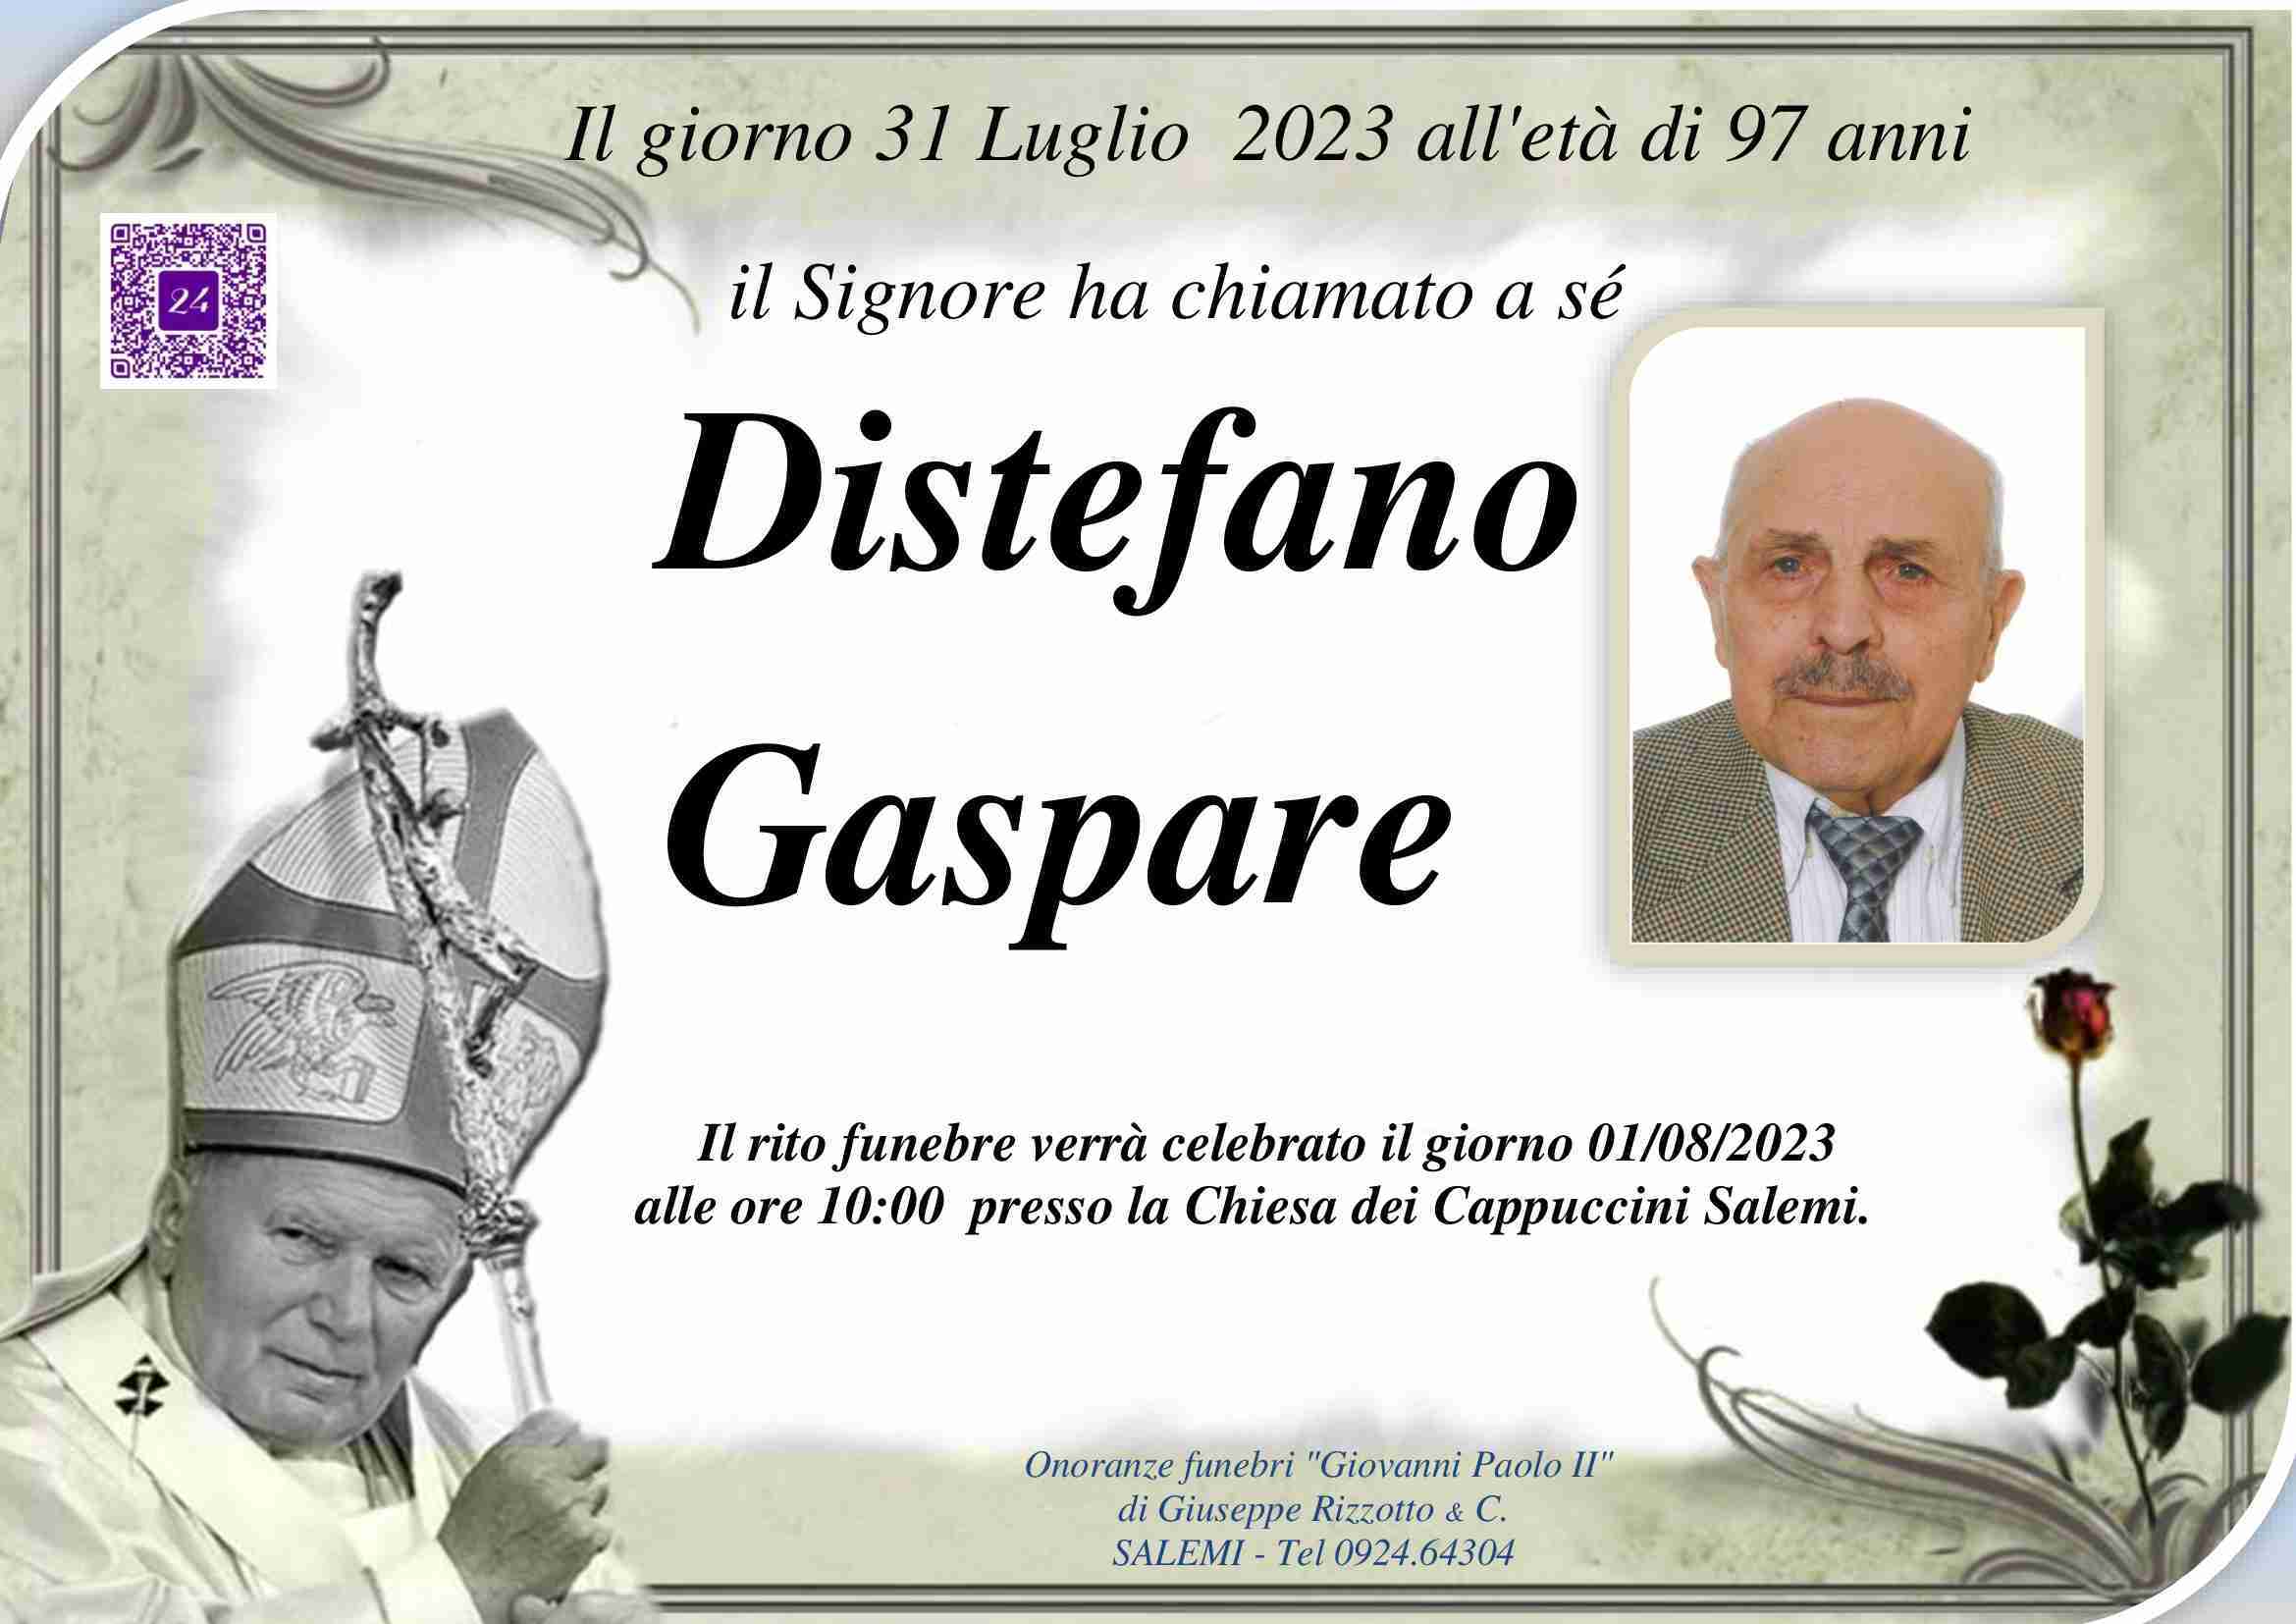 Gaspare Distefano